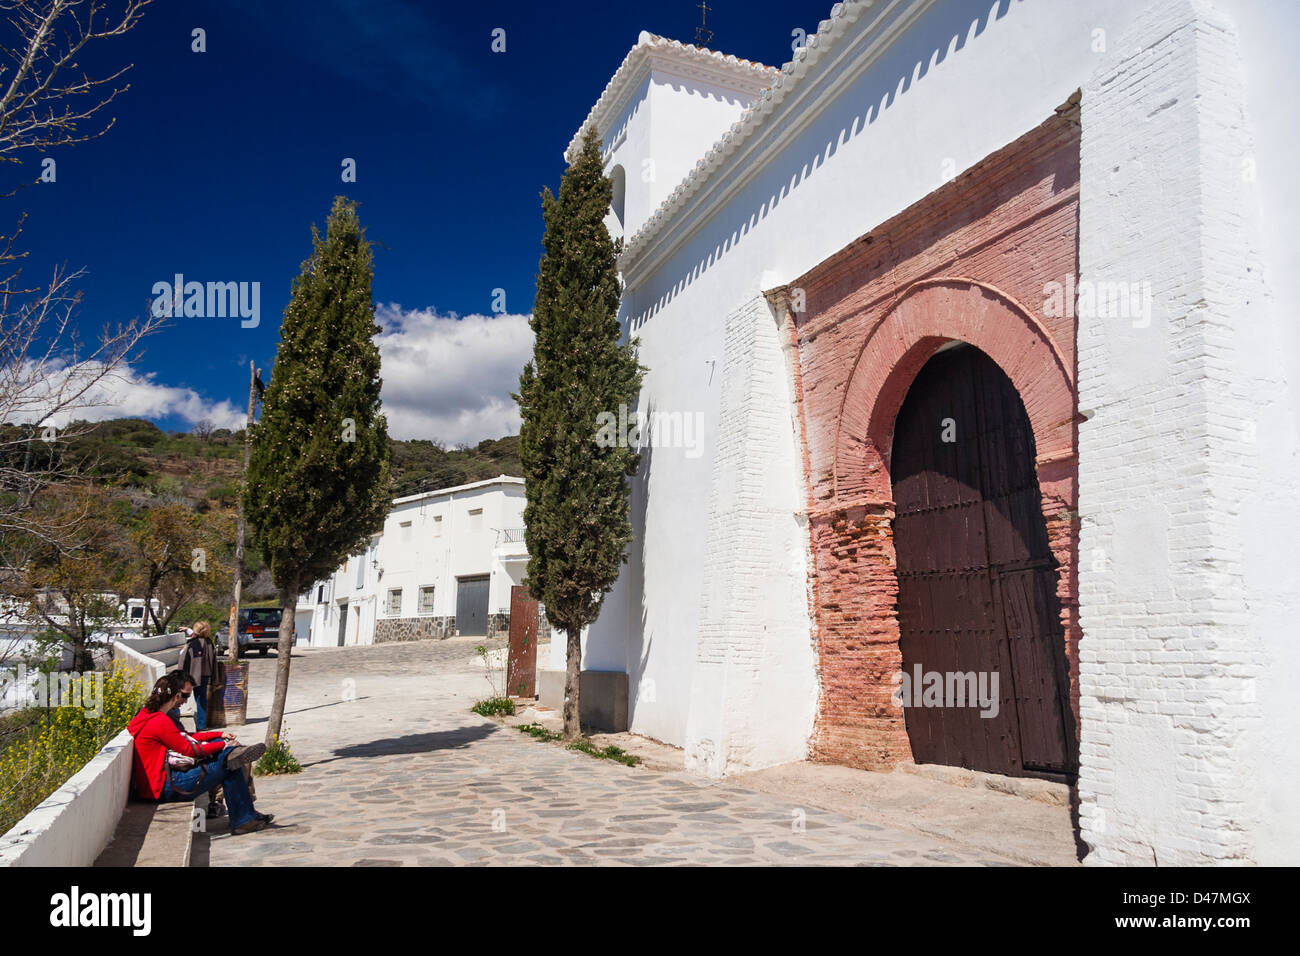 Alte Kirche in Wien weiß getünchten Dorf in Las Alpujarras, Granada,  Spanien Stockfotografie - Alamy